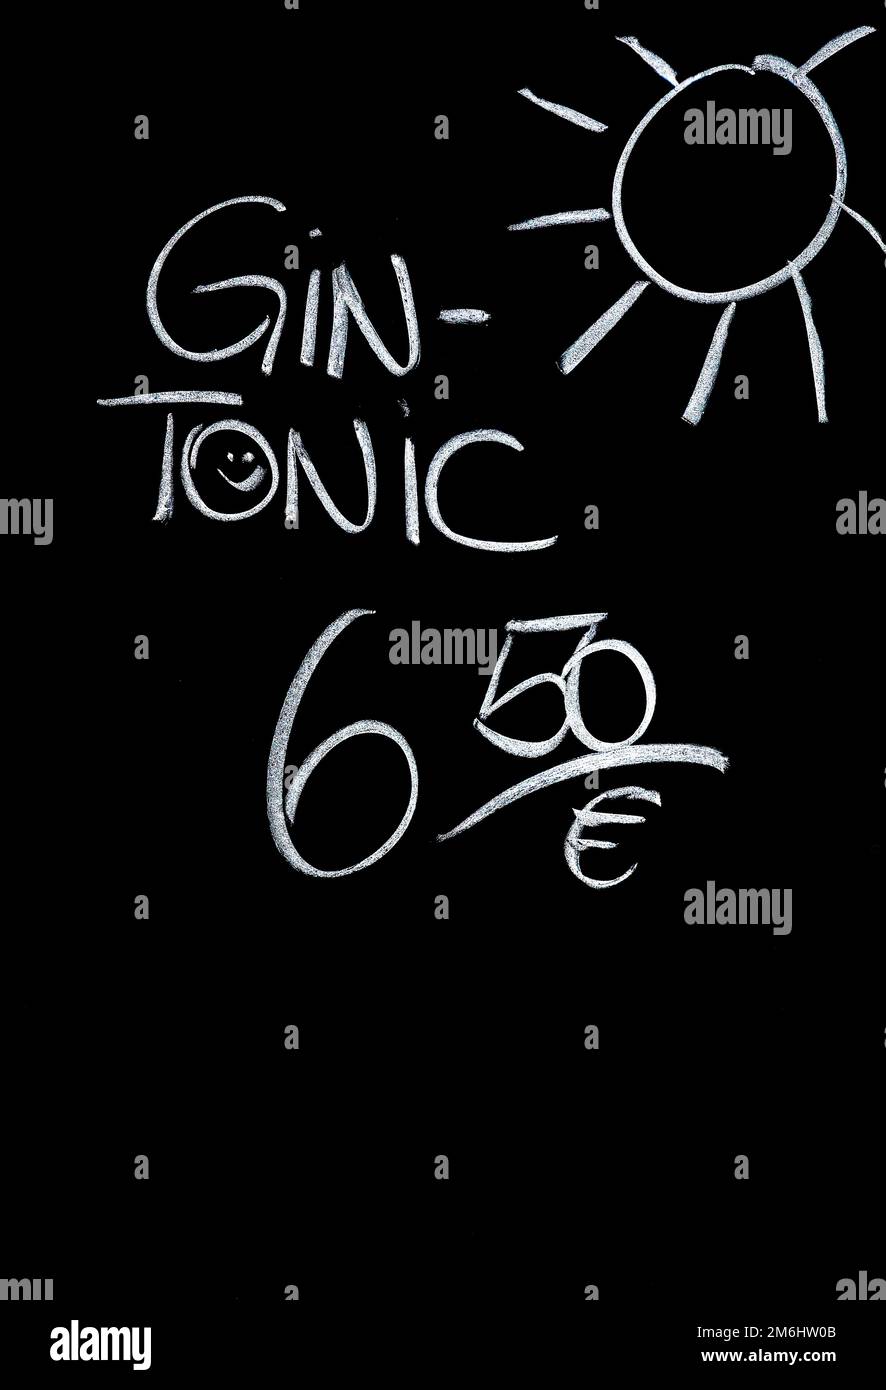 Panneau publicitaire pour gin et tonique, à 6,50 euros la pièce. Banque D'Images